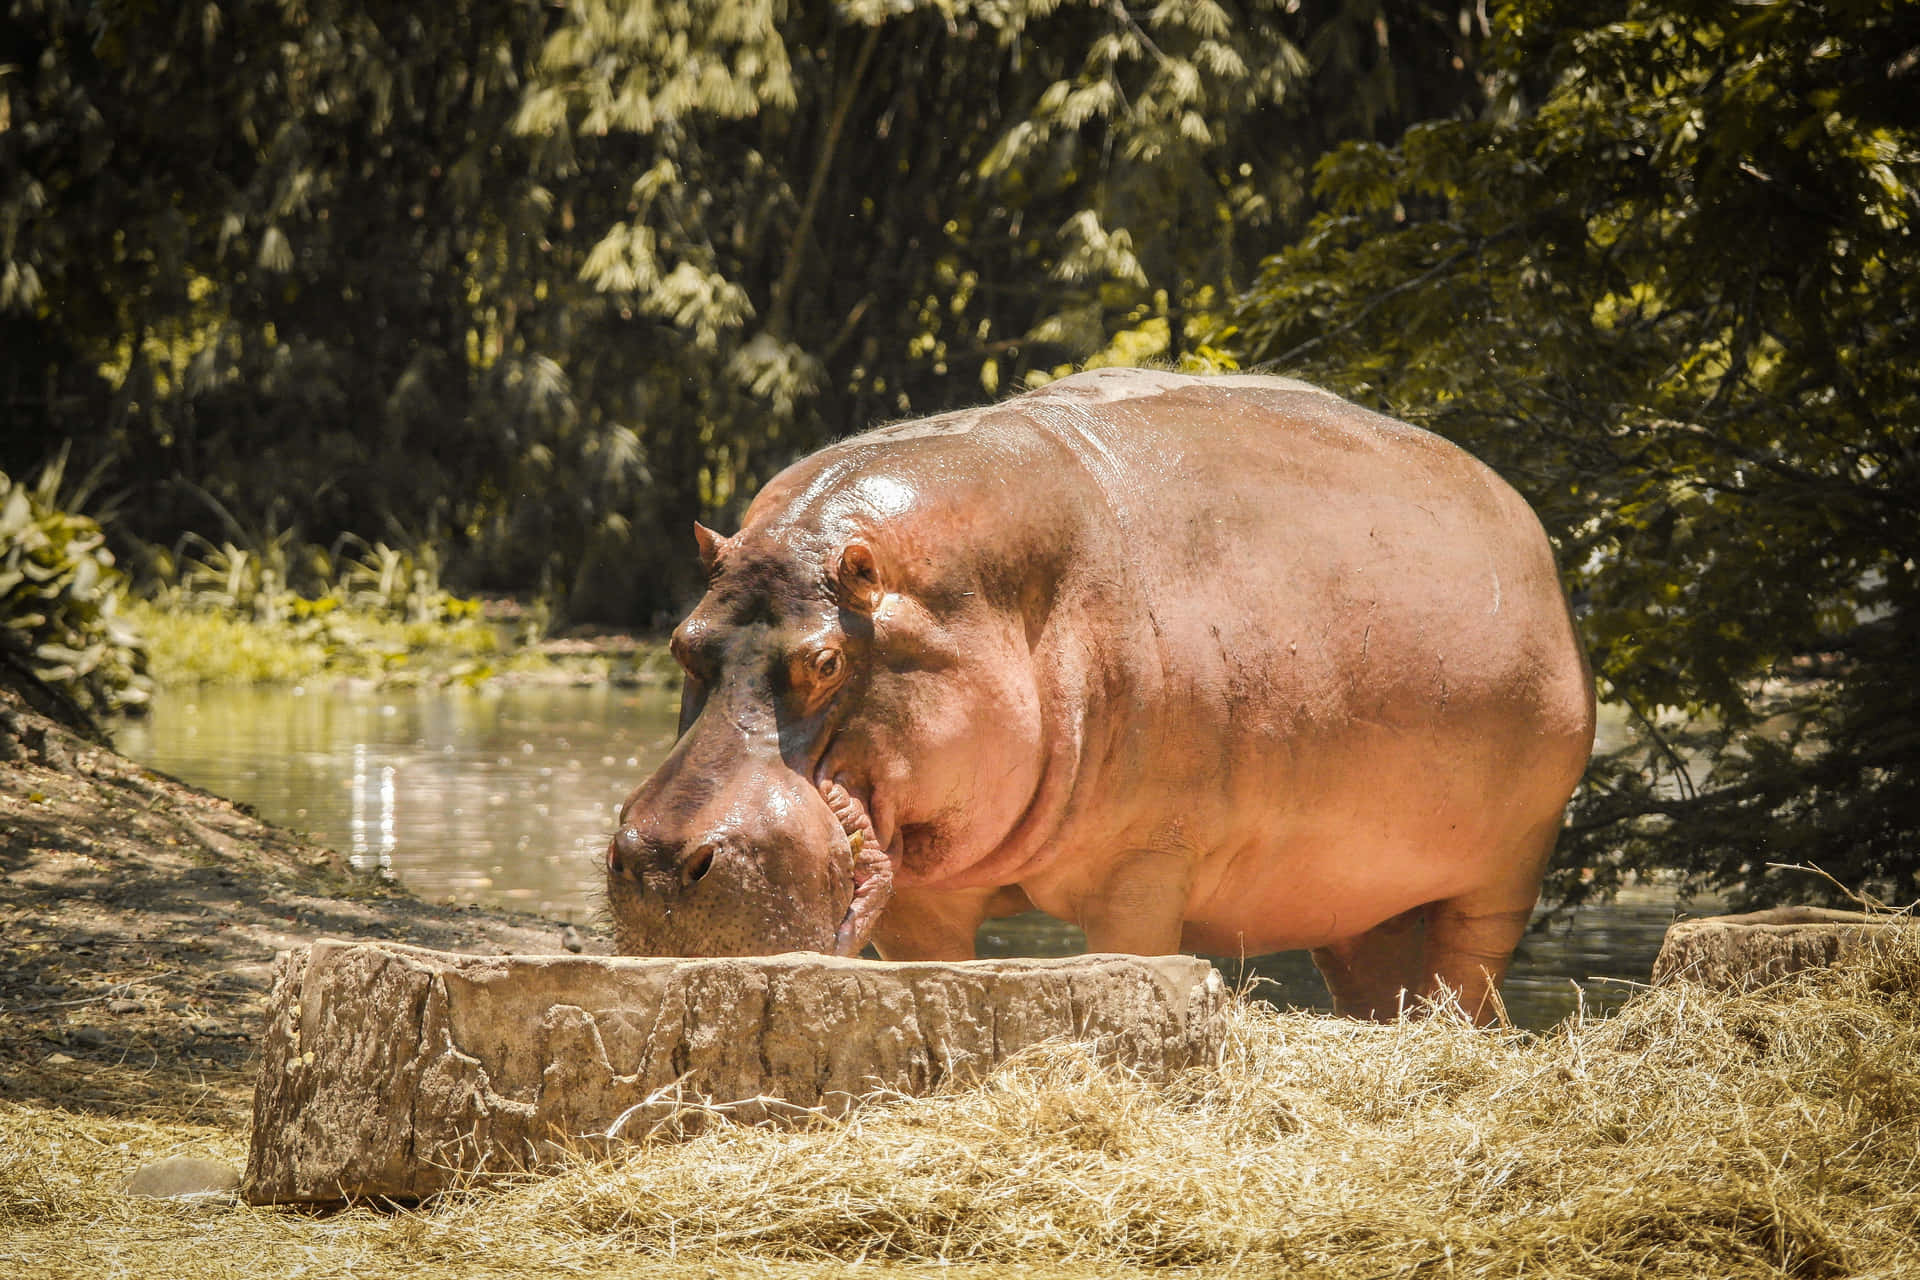 Imagendel Hipopótamo Comiendo En Un Río Natural.